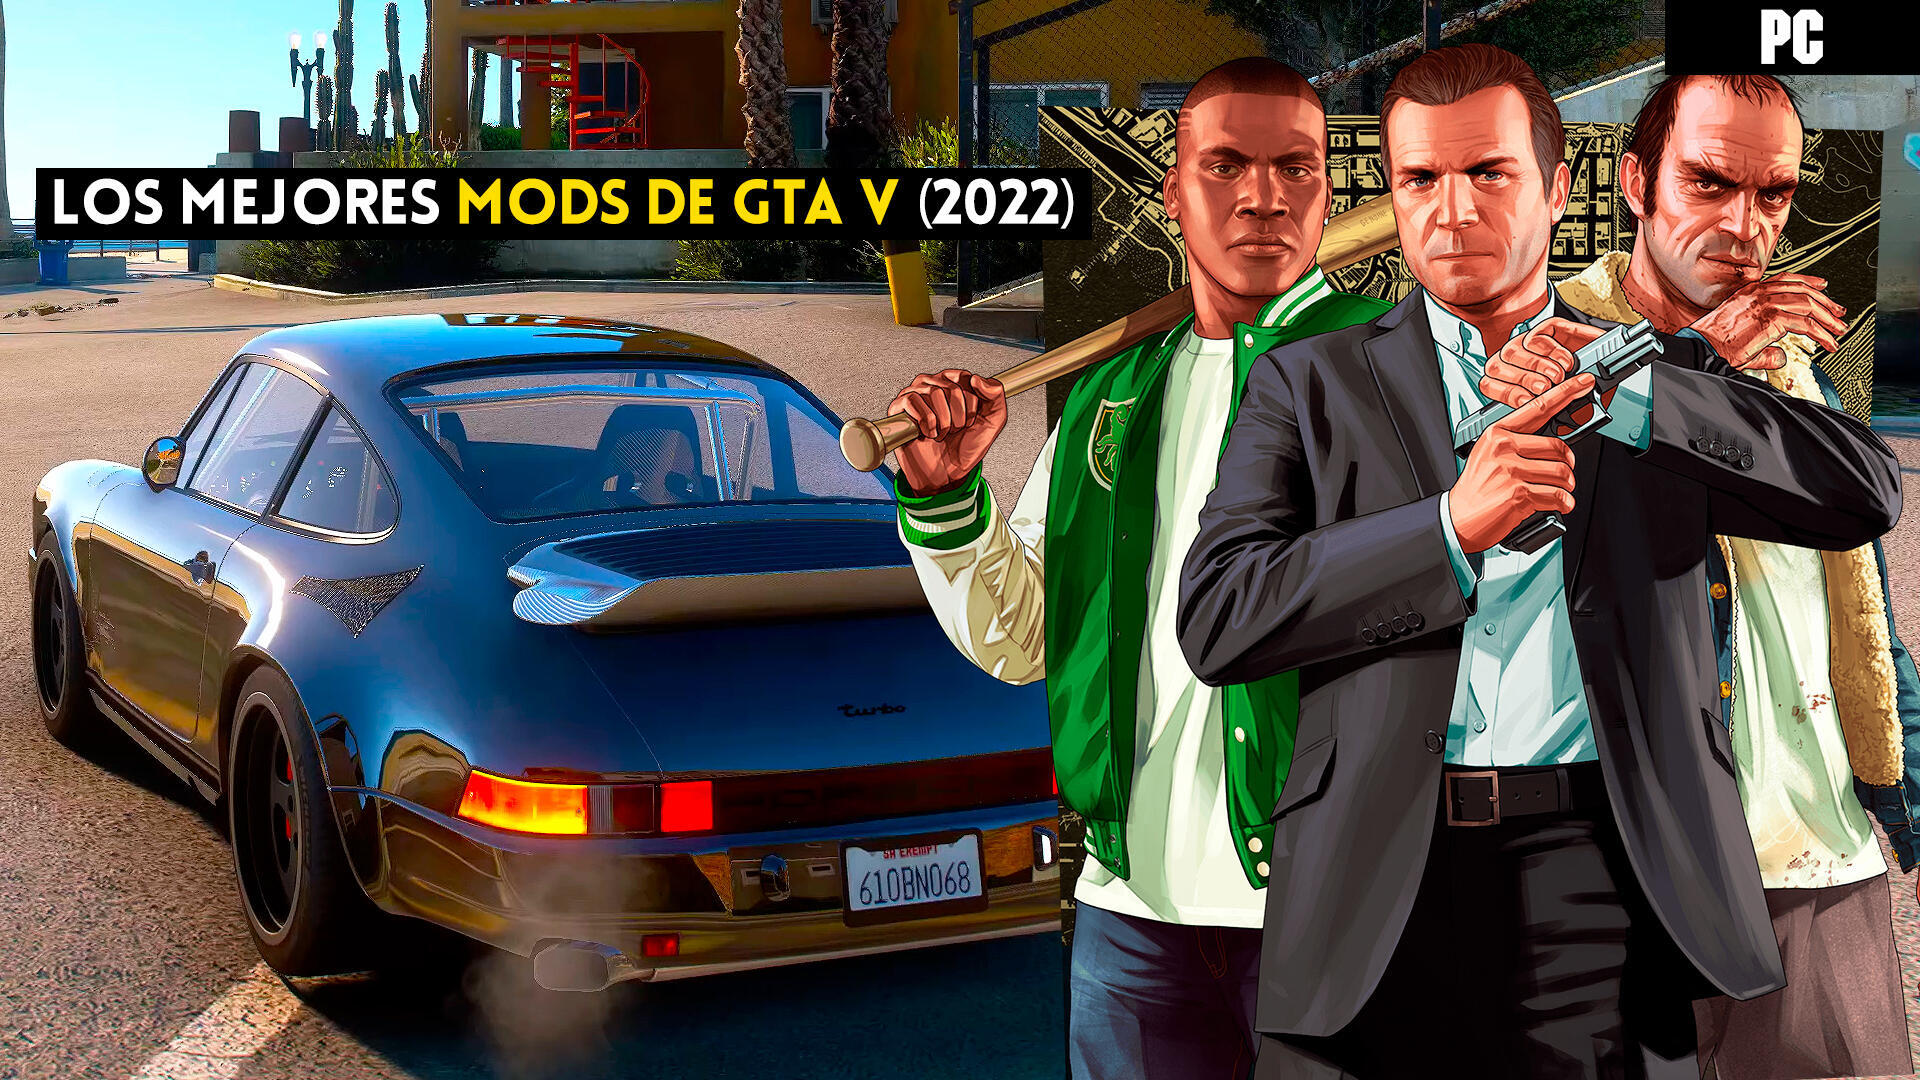 Los mejores mods para GTA 5 en PC (2023) - Imprescindibles!